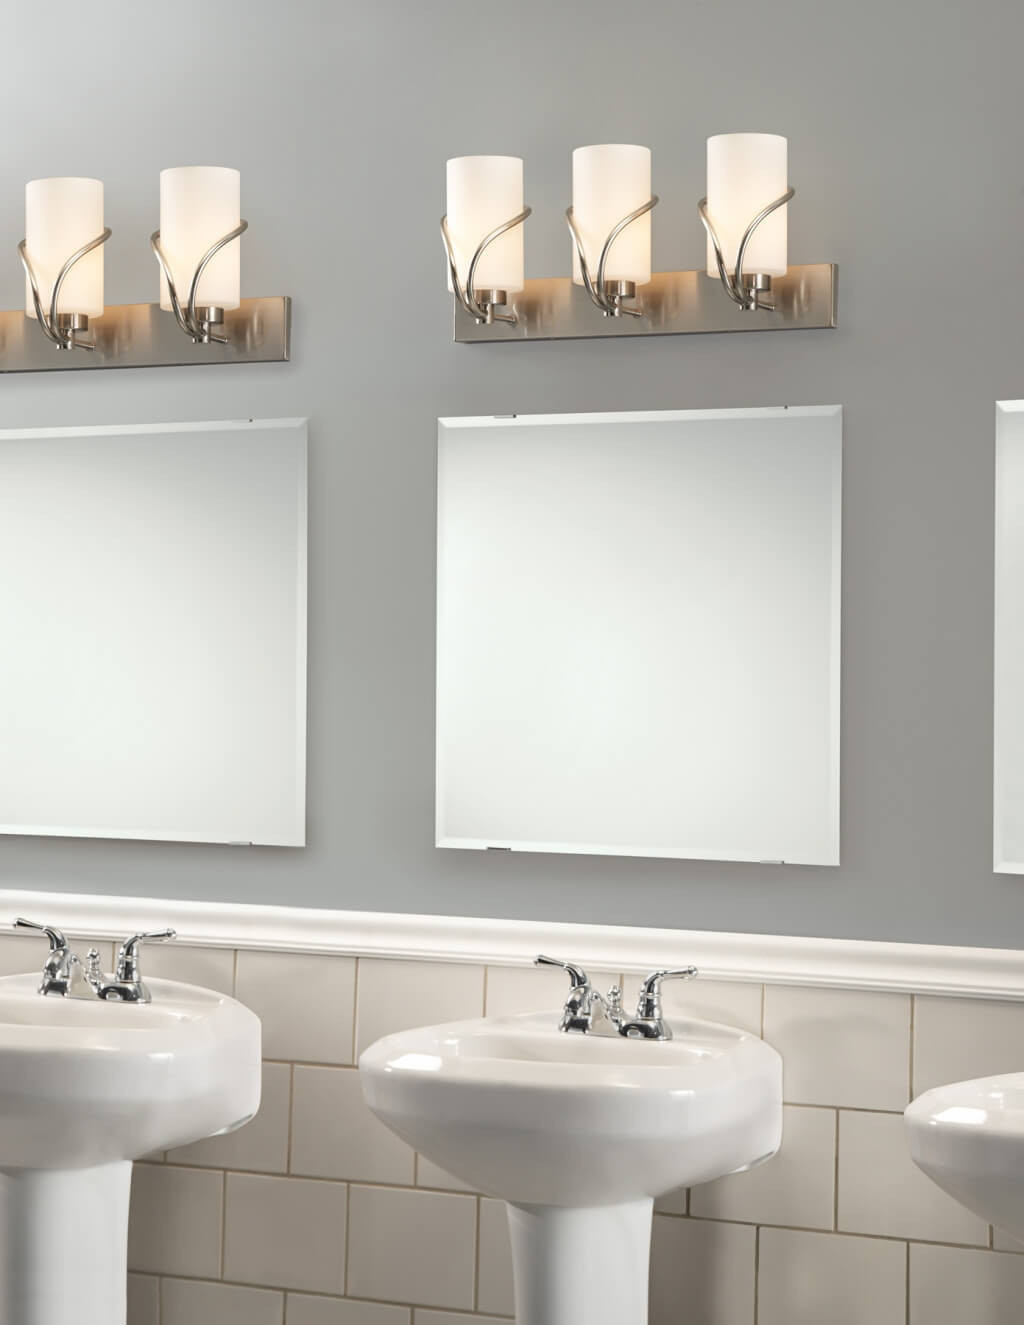 Lowes Lighting Bathroom
 Bathroom Elegant Bathroom Lighting With Lowes Bathroom